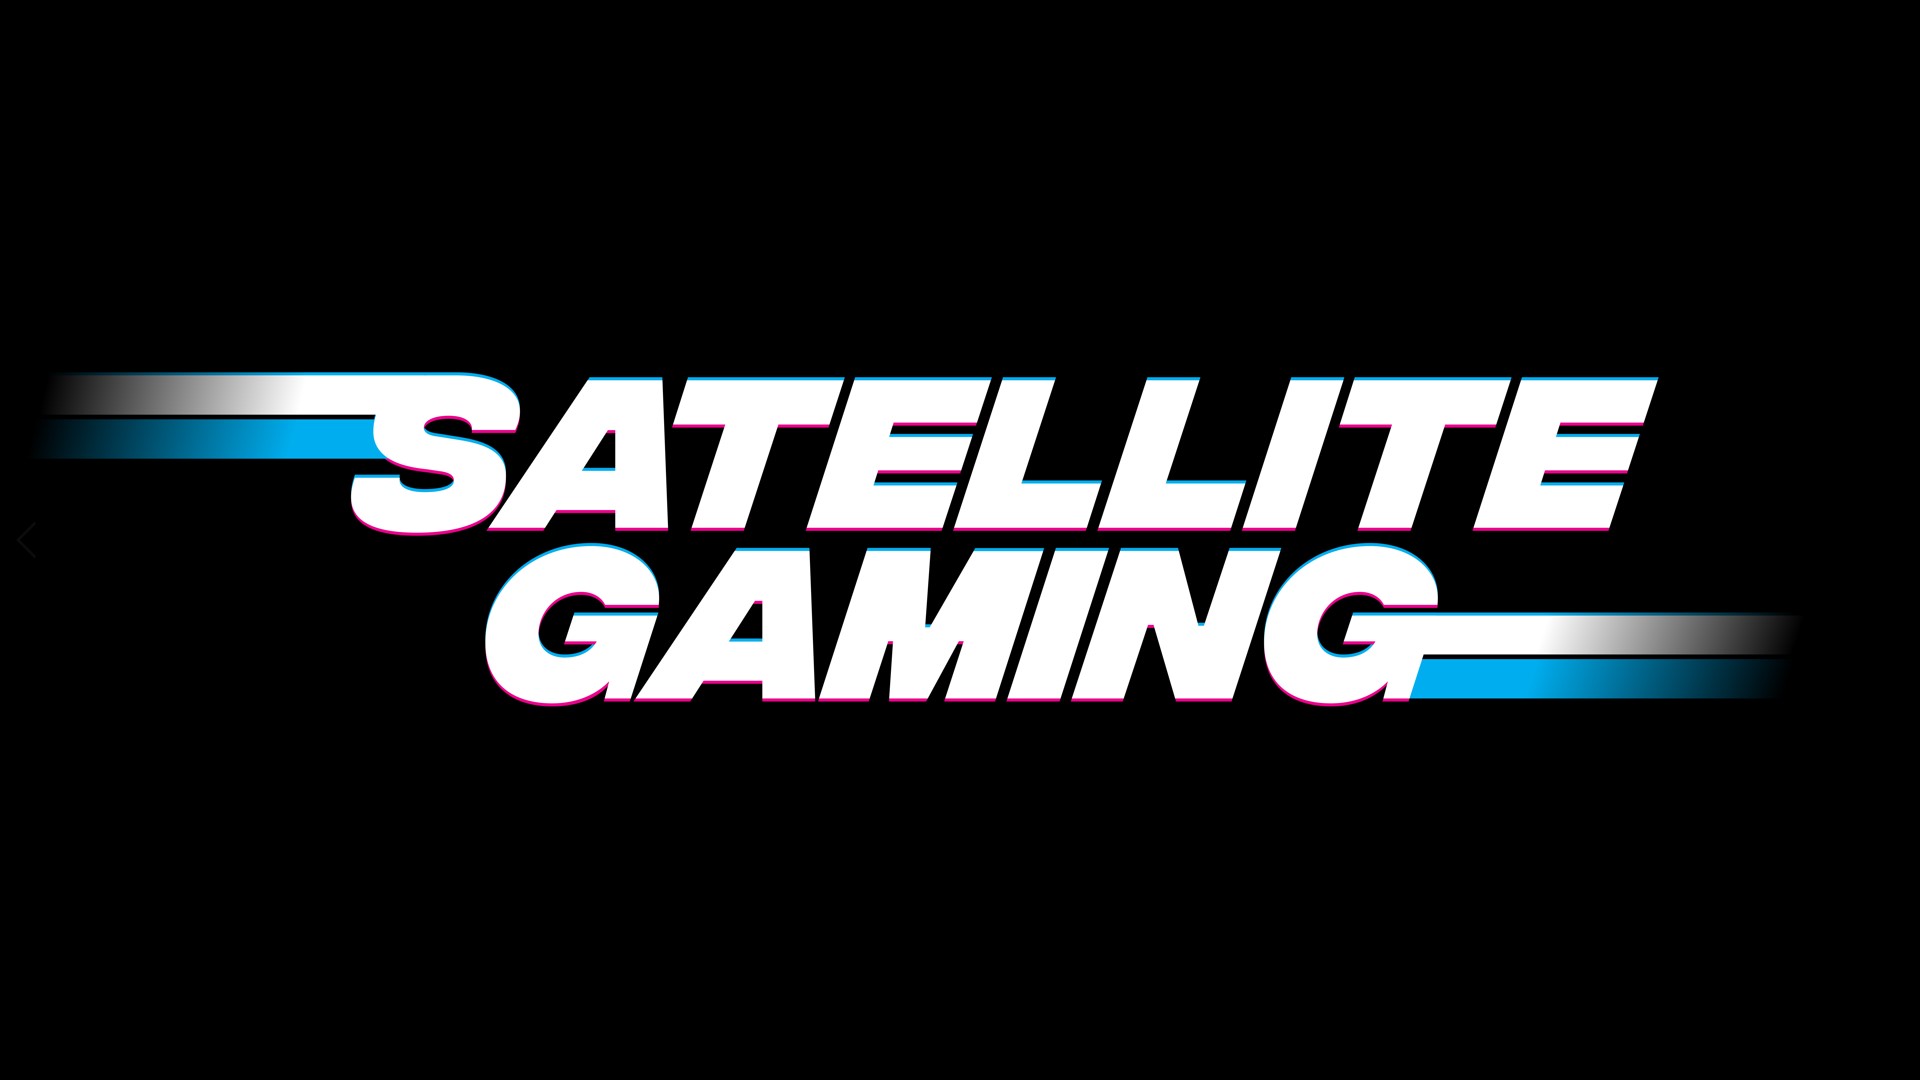 Satellite Gaming logo